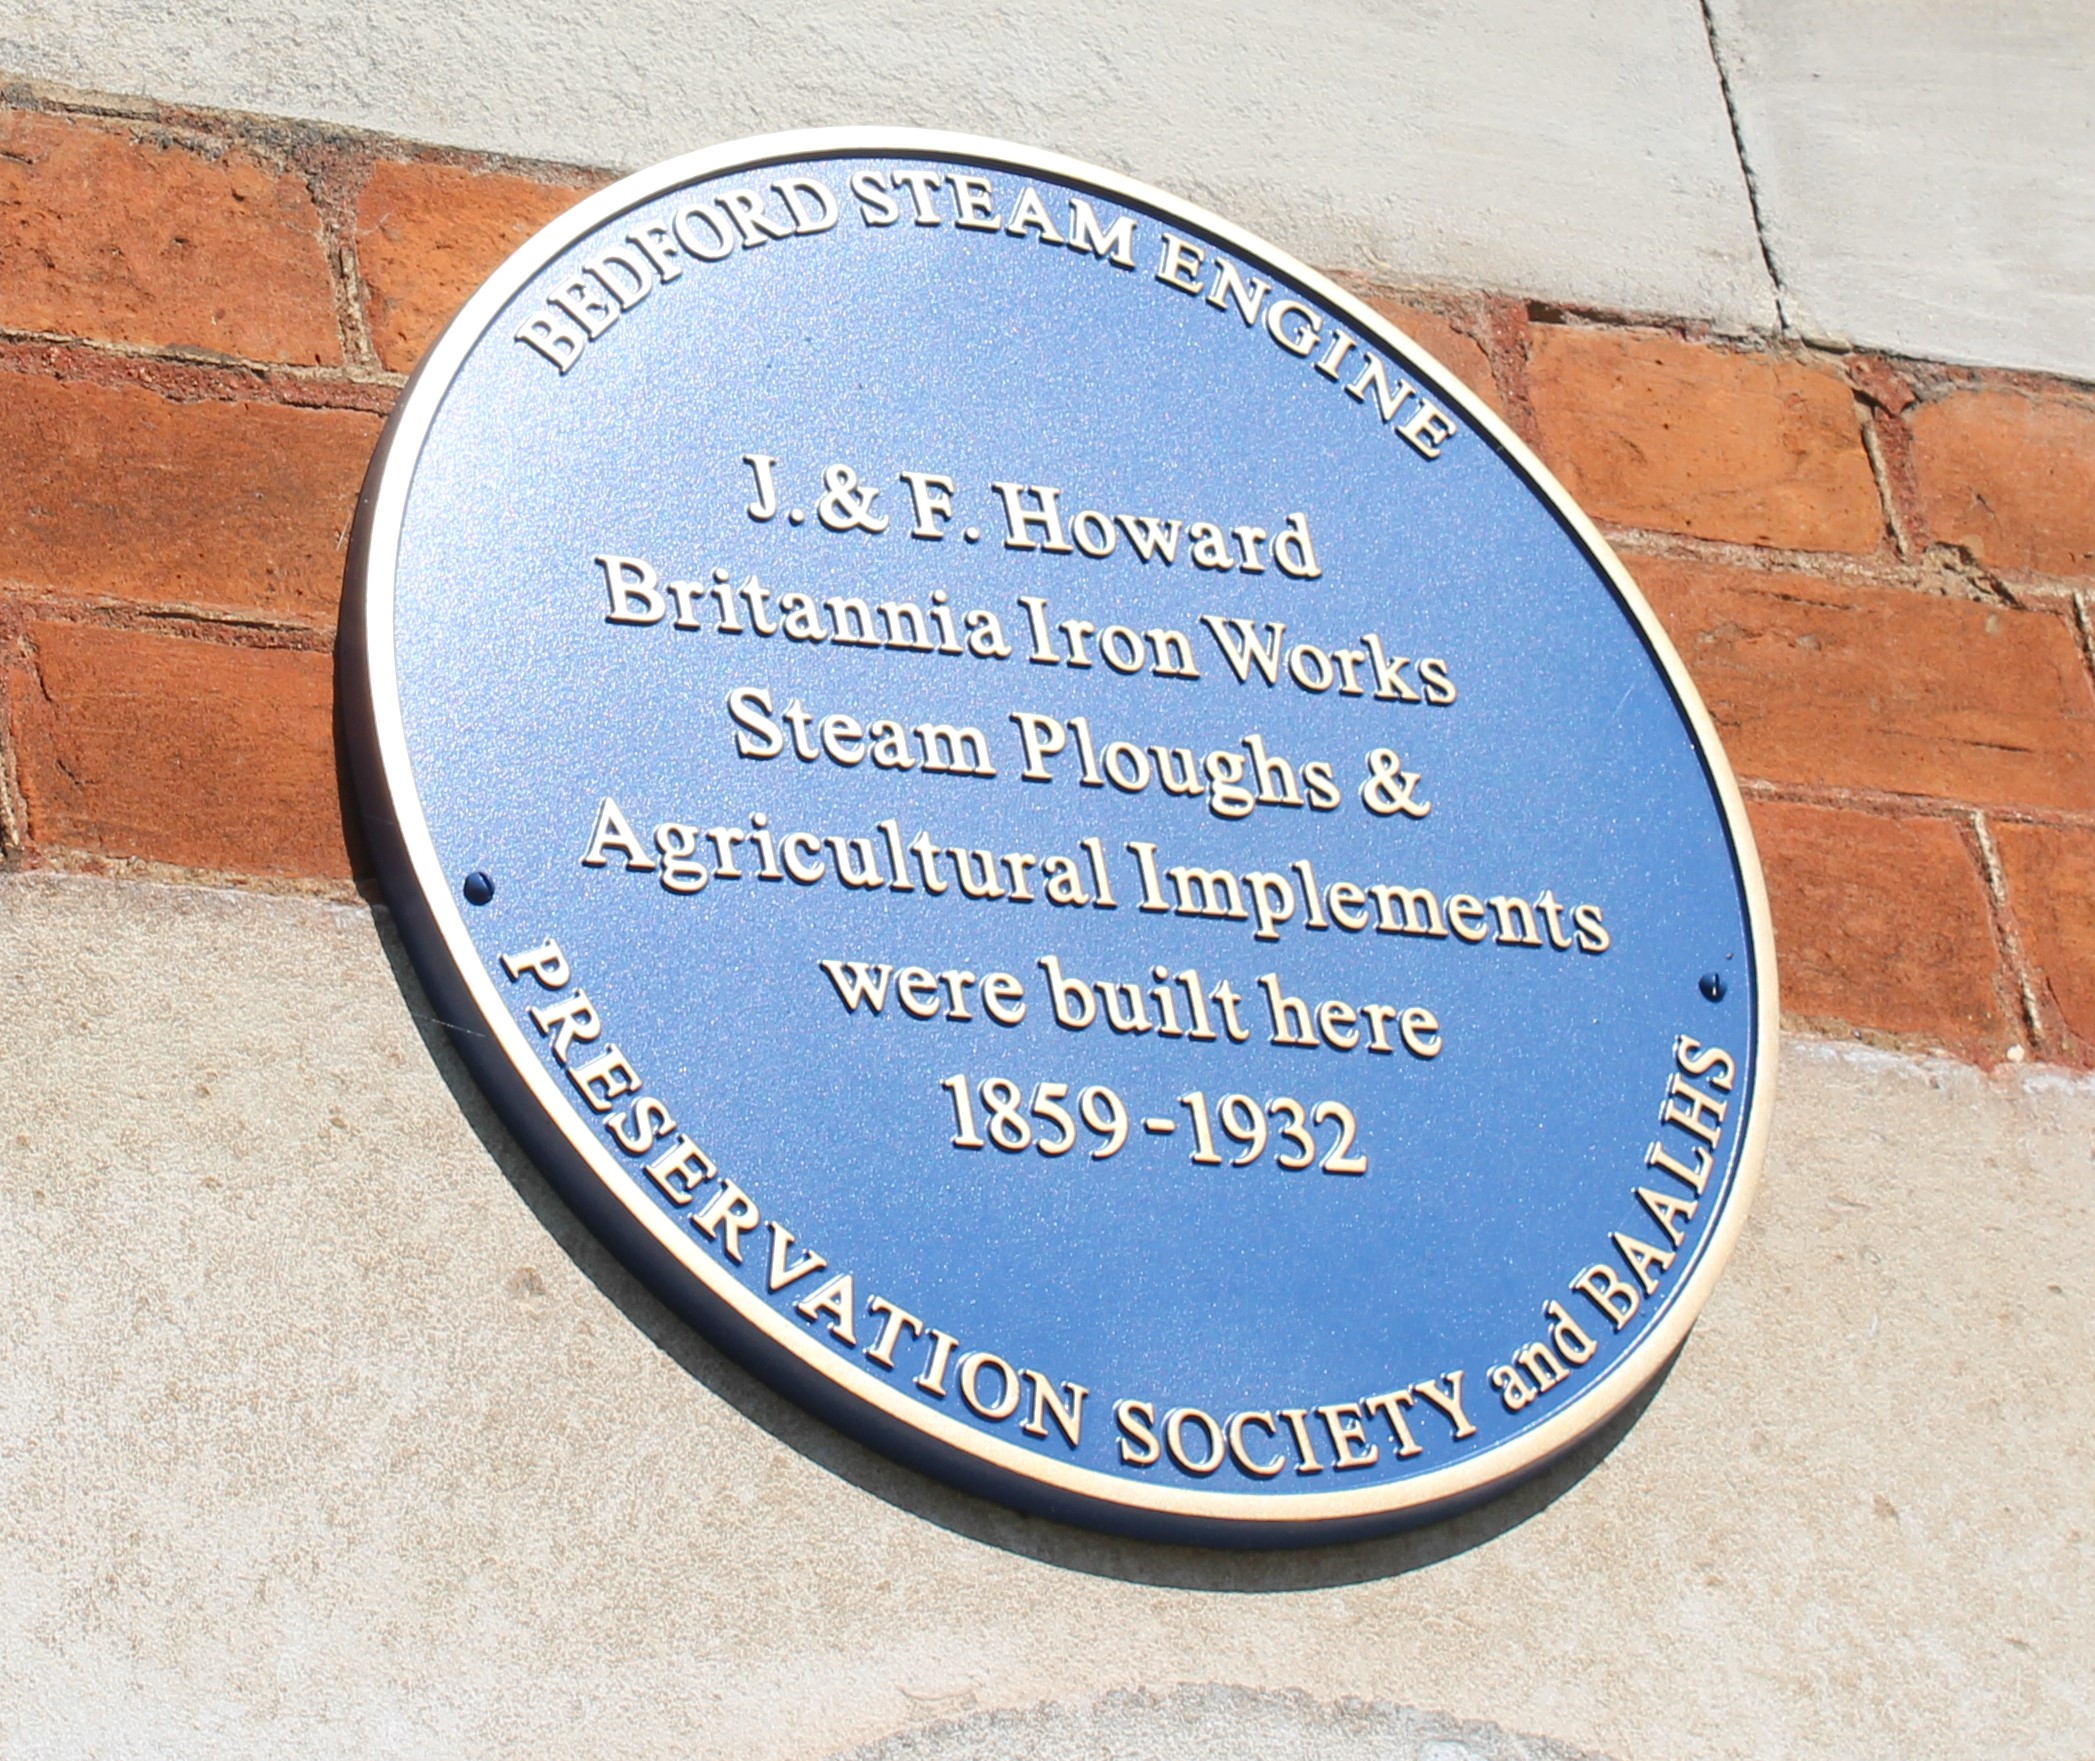 J & F Howard Britannia Iron Works commemorative plaque